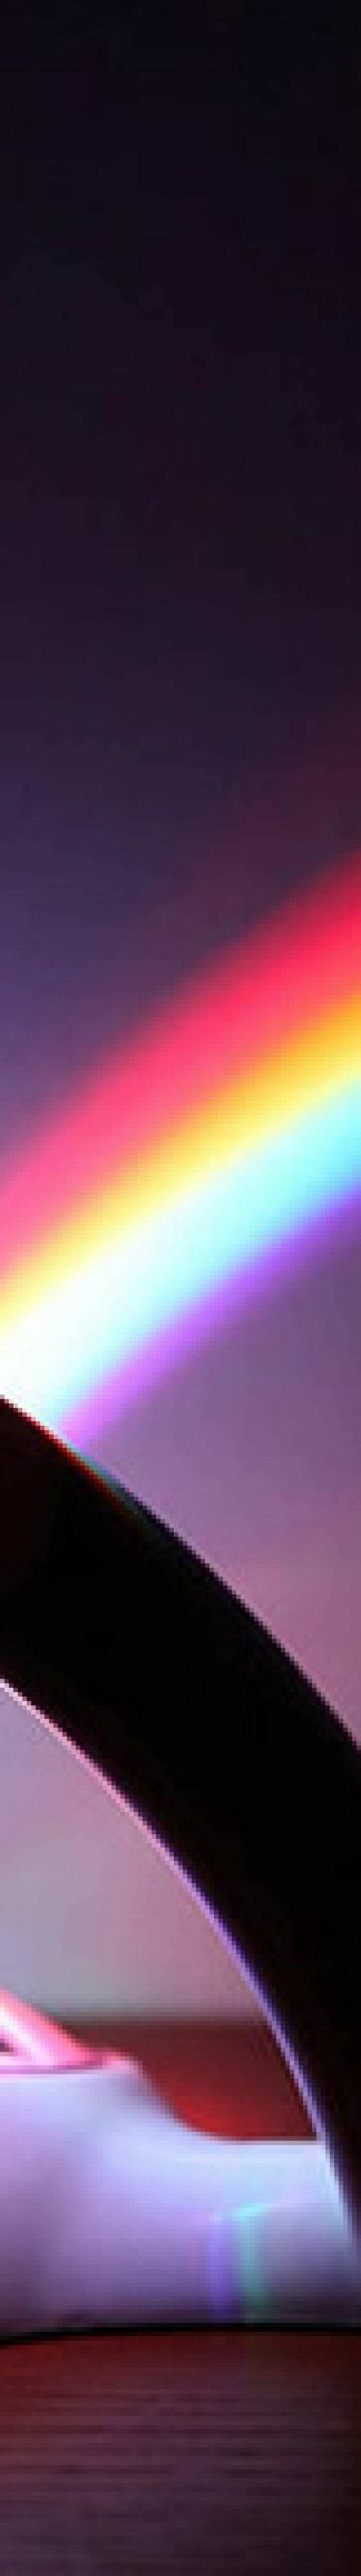 Aparelho eletrônico projeta um arco-íris na parede, mas não vem com pote de ouro